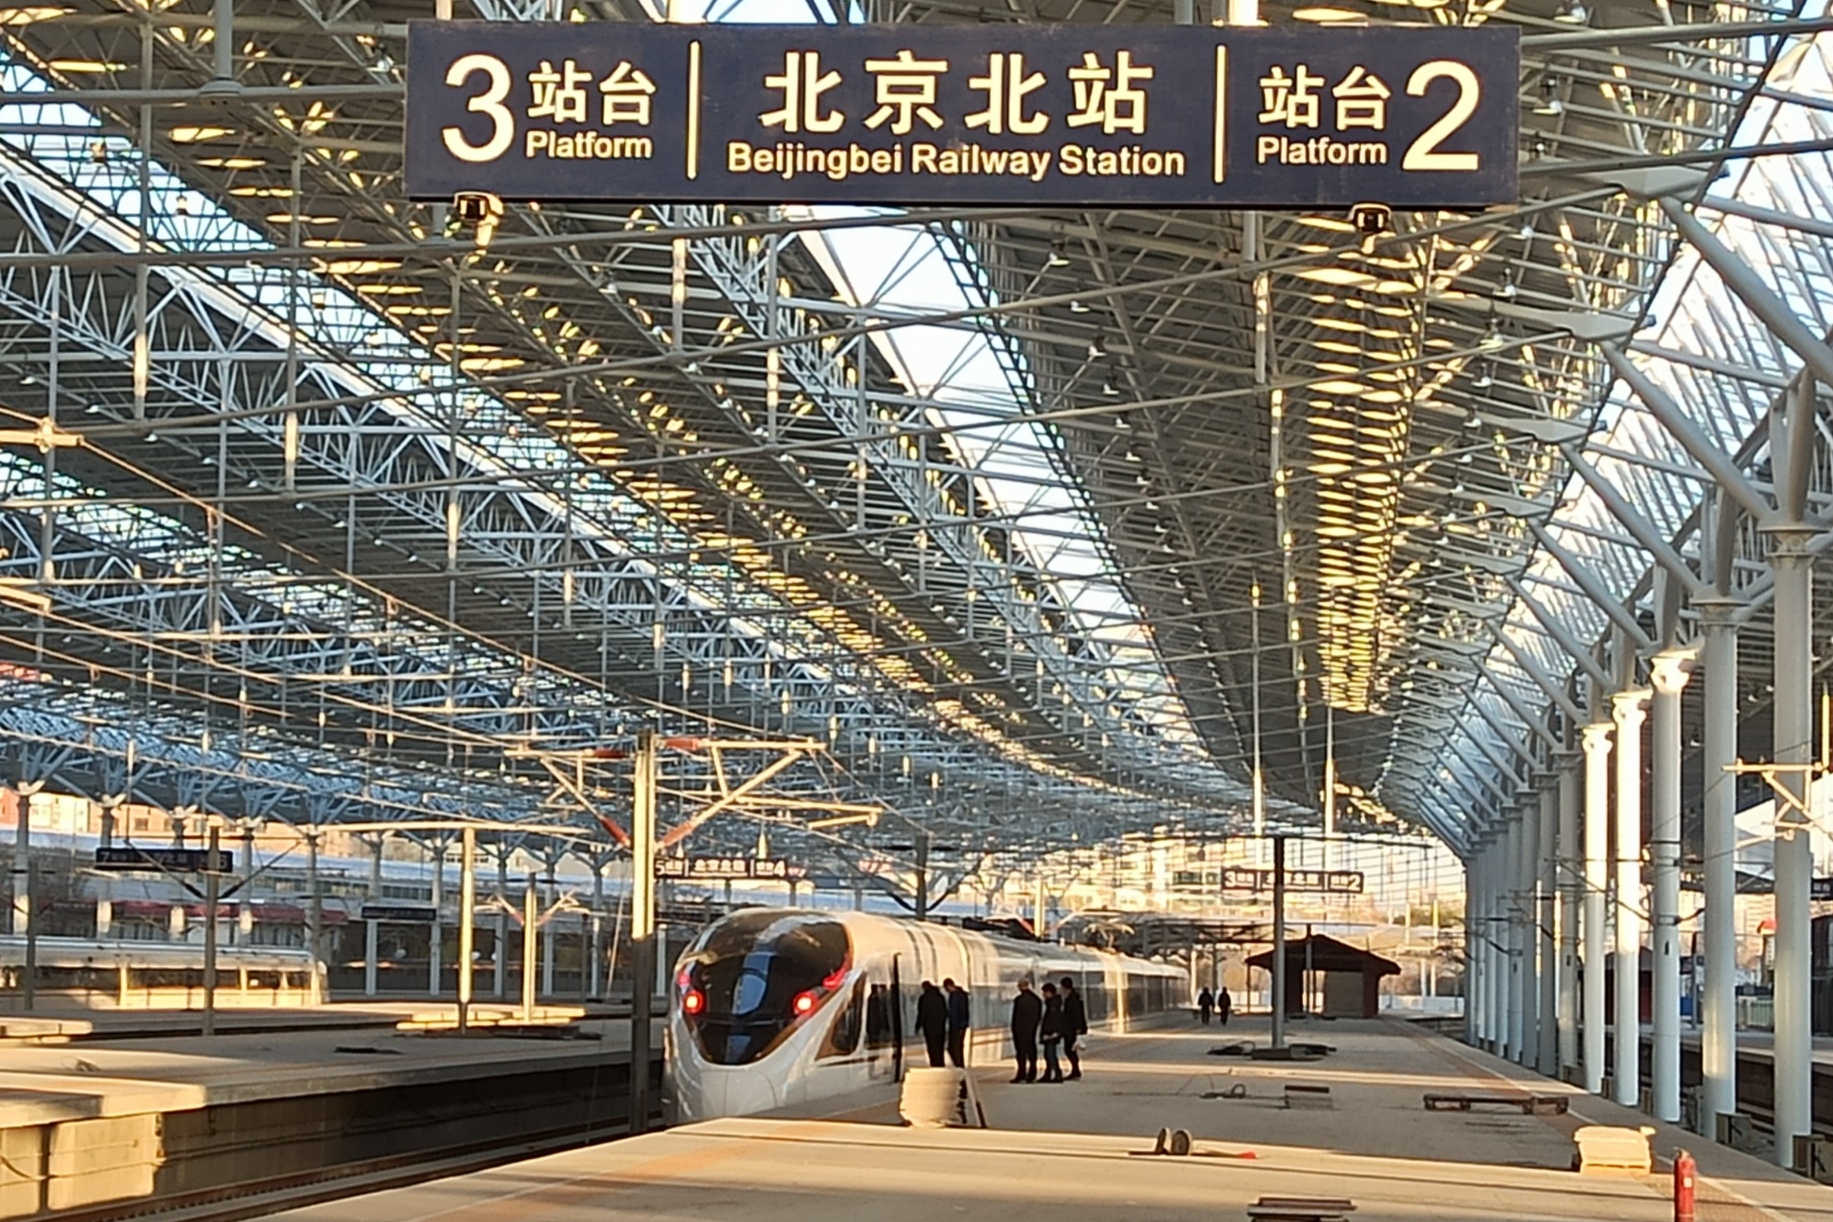 乘京张高铁,览大好河山,从北京北站看起